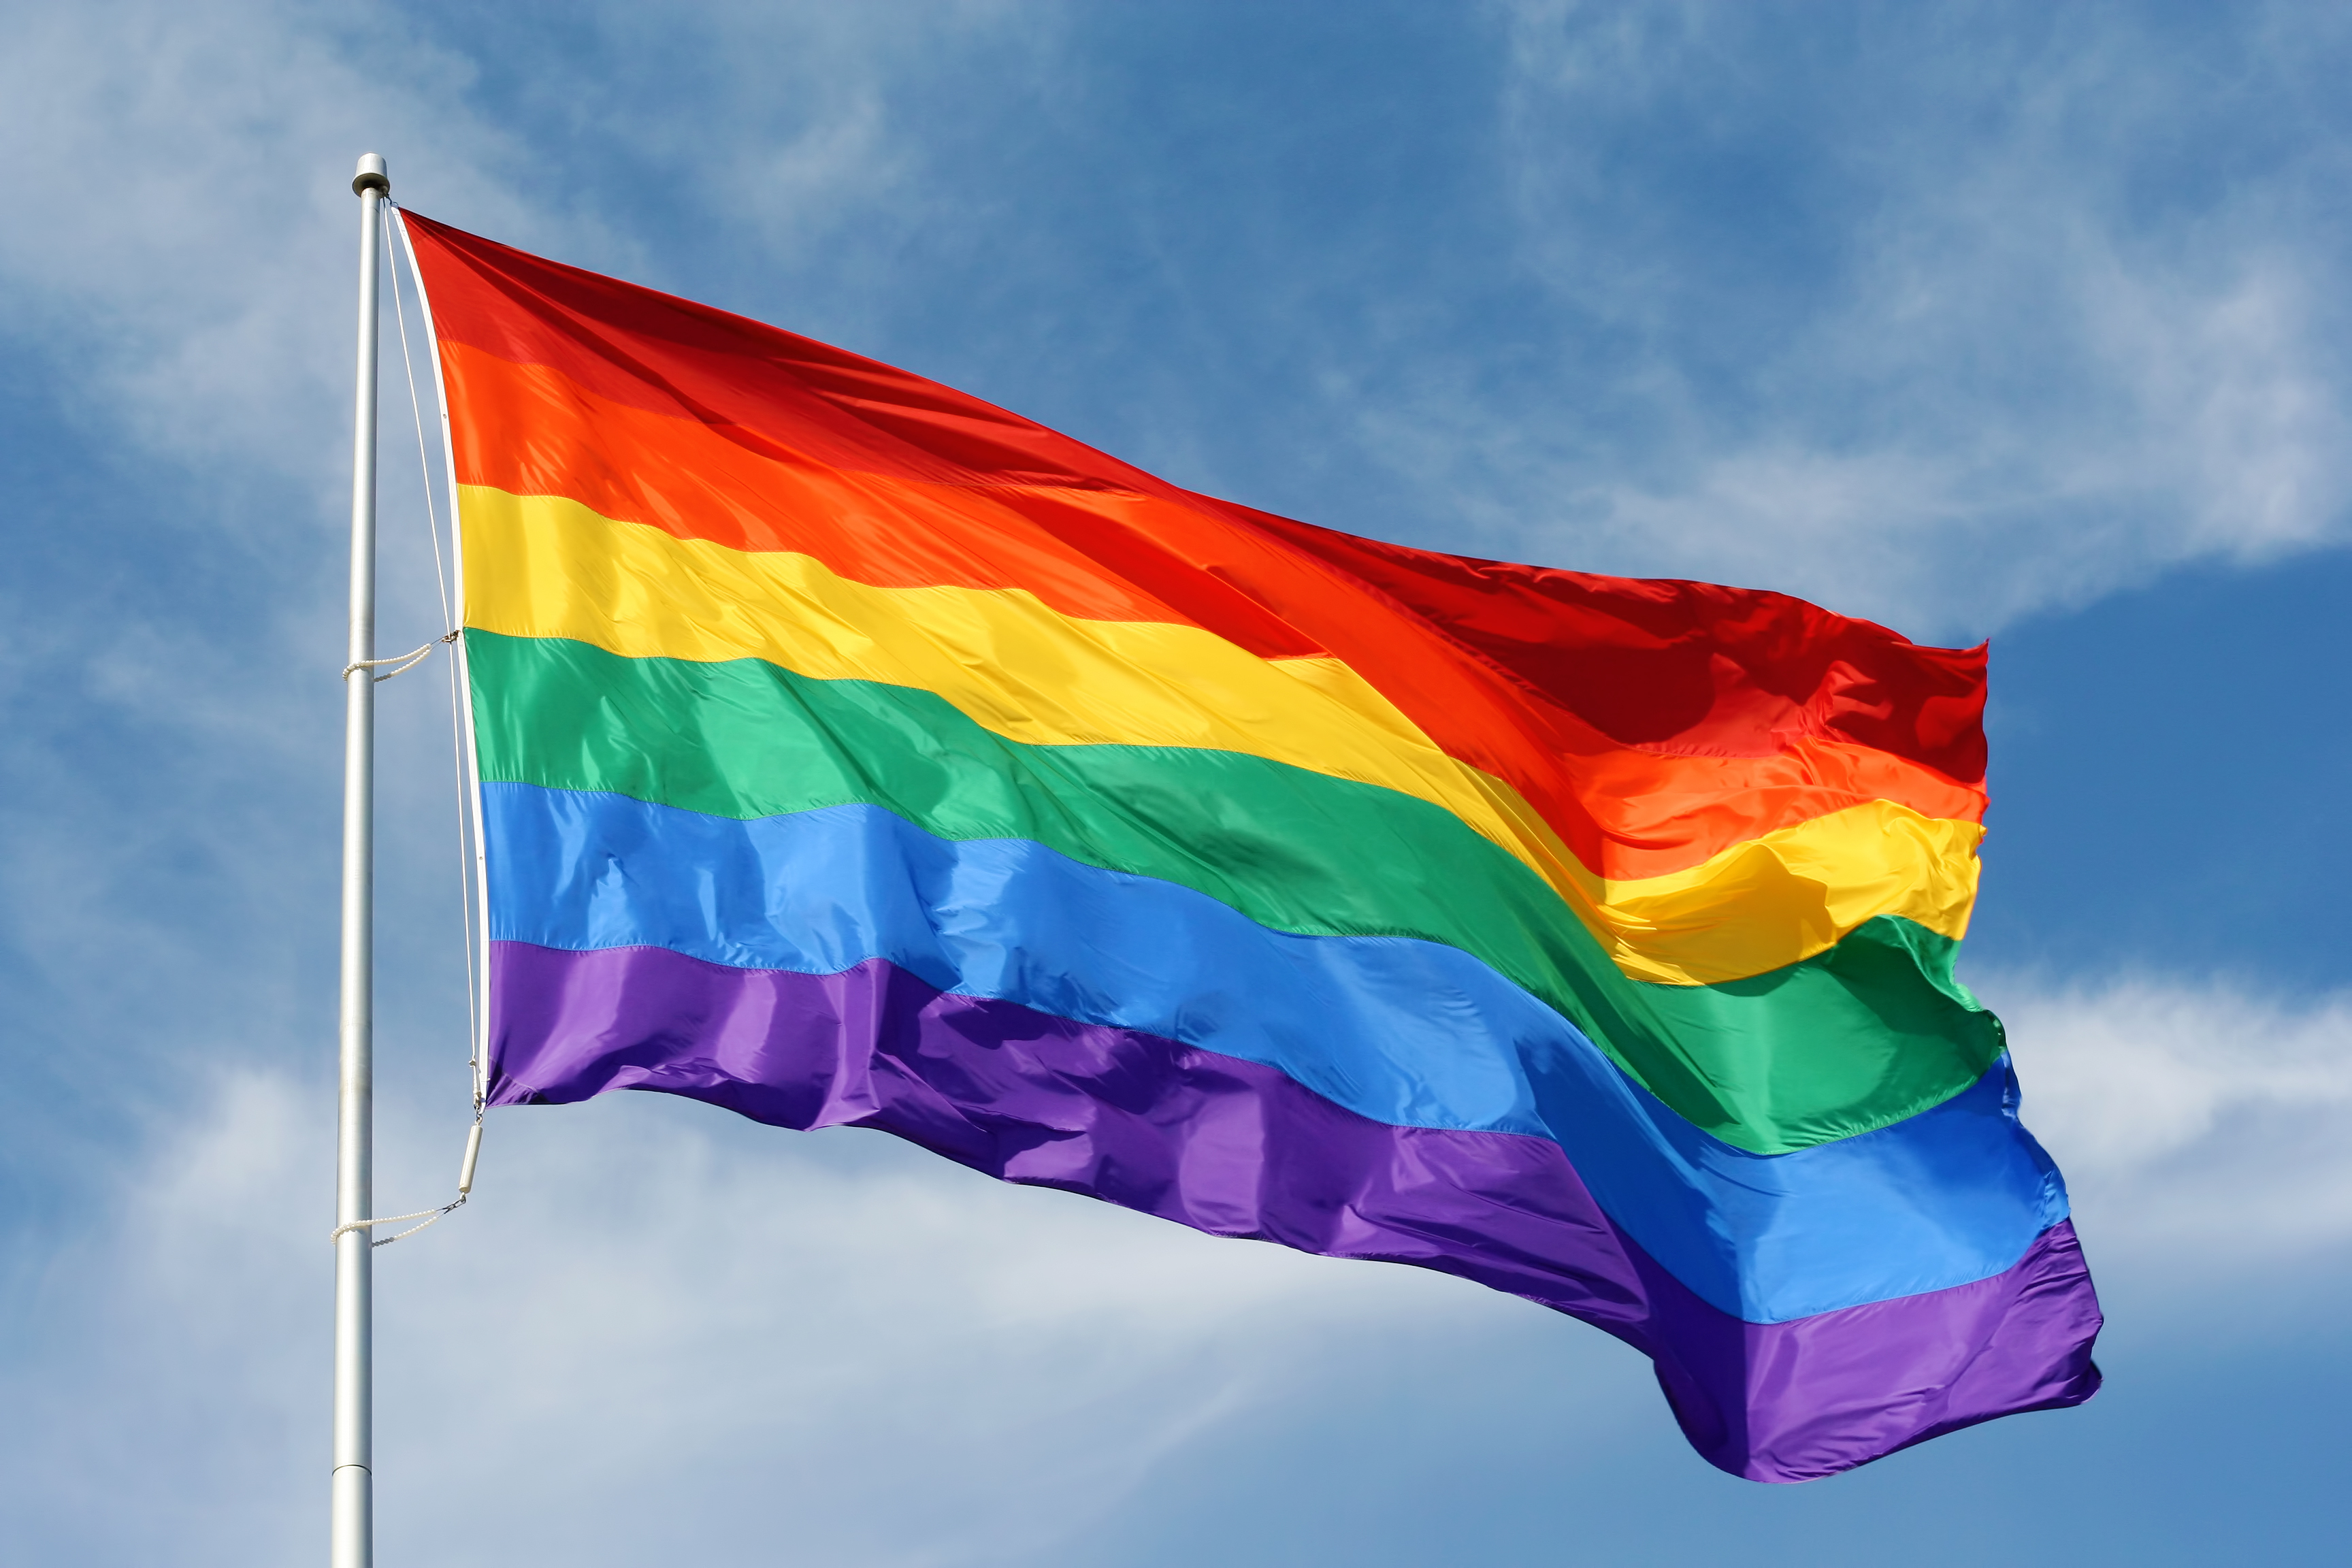 orlando gay pride flag images